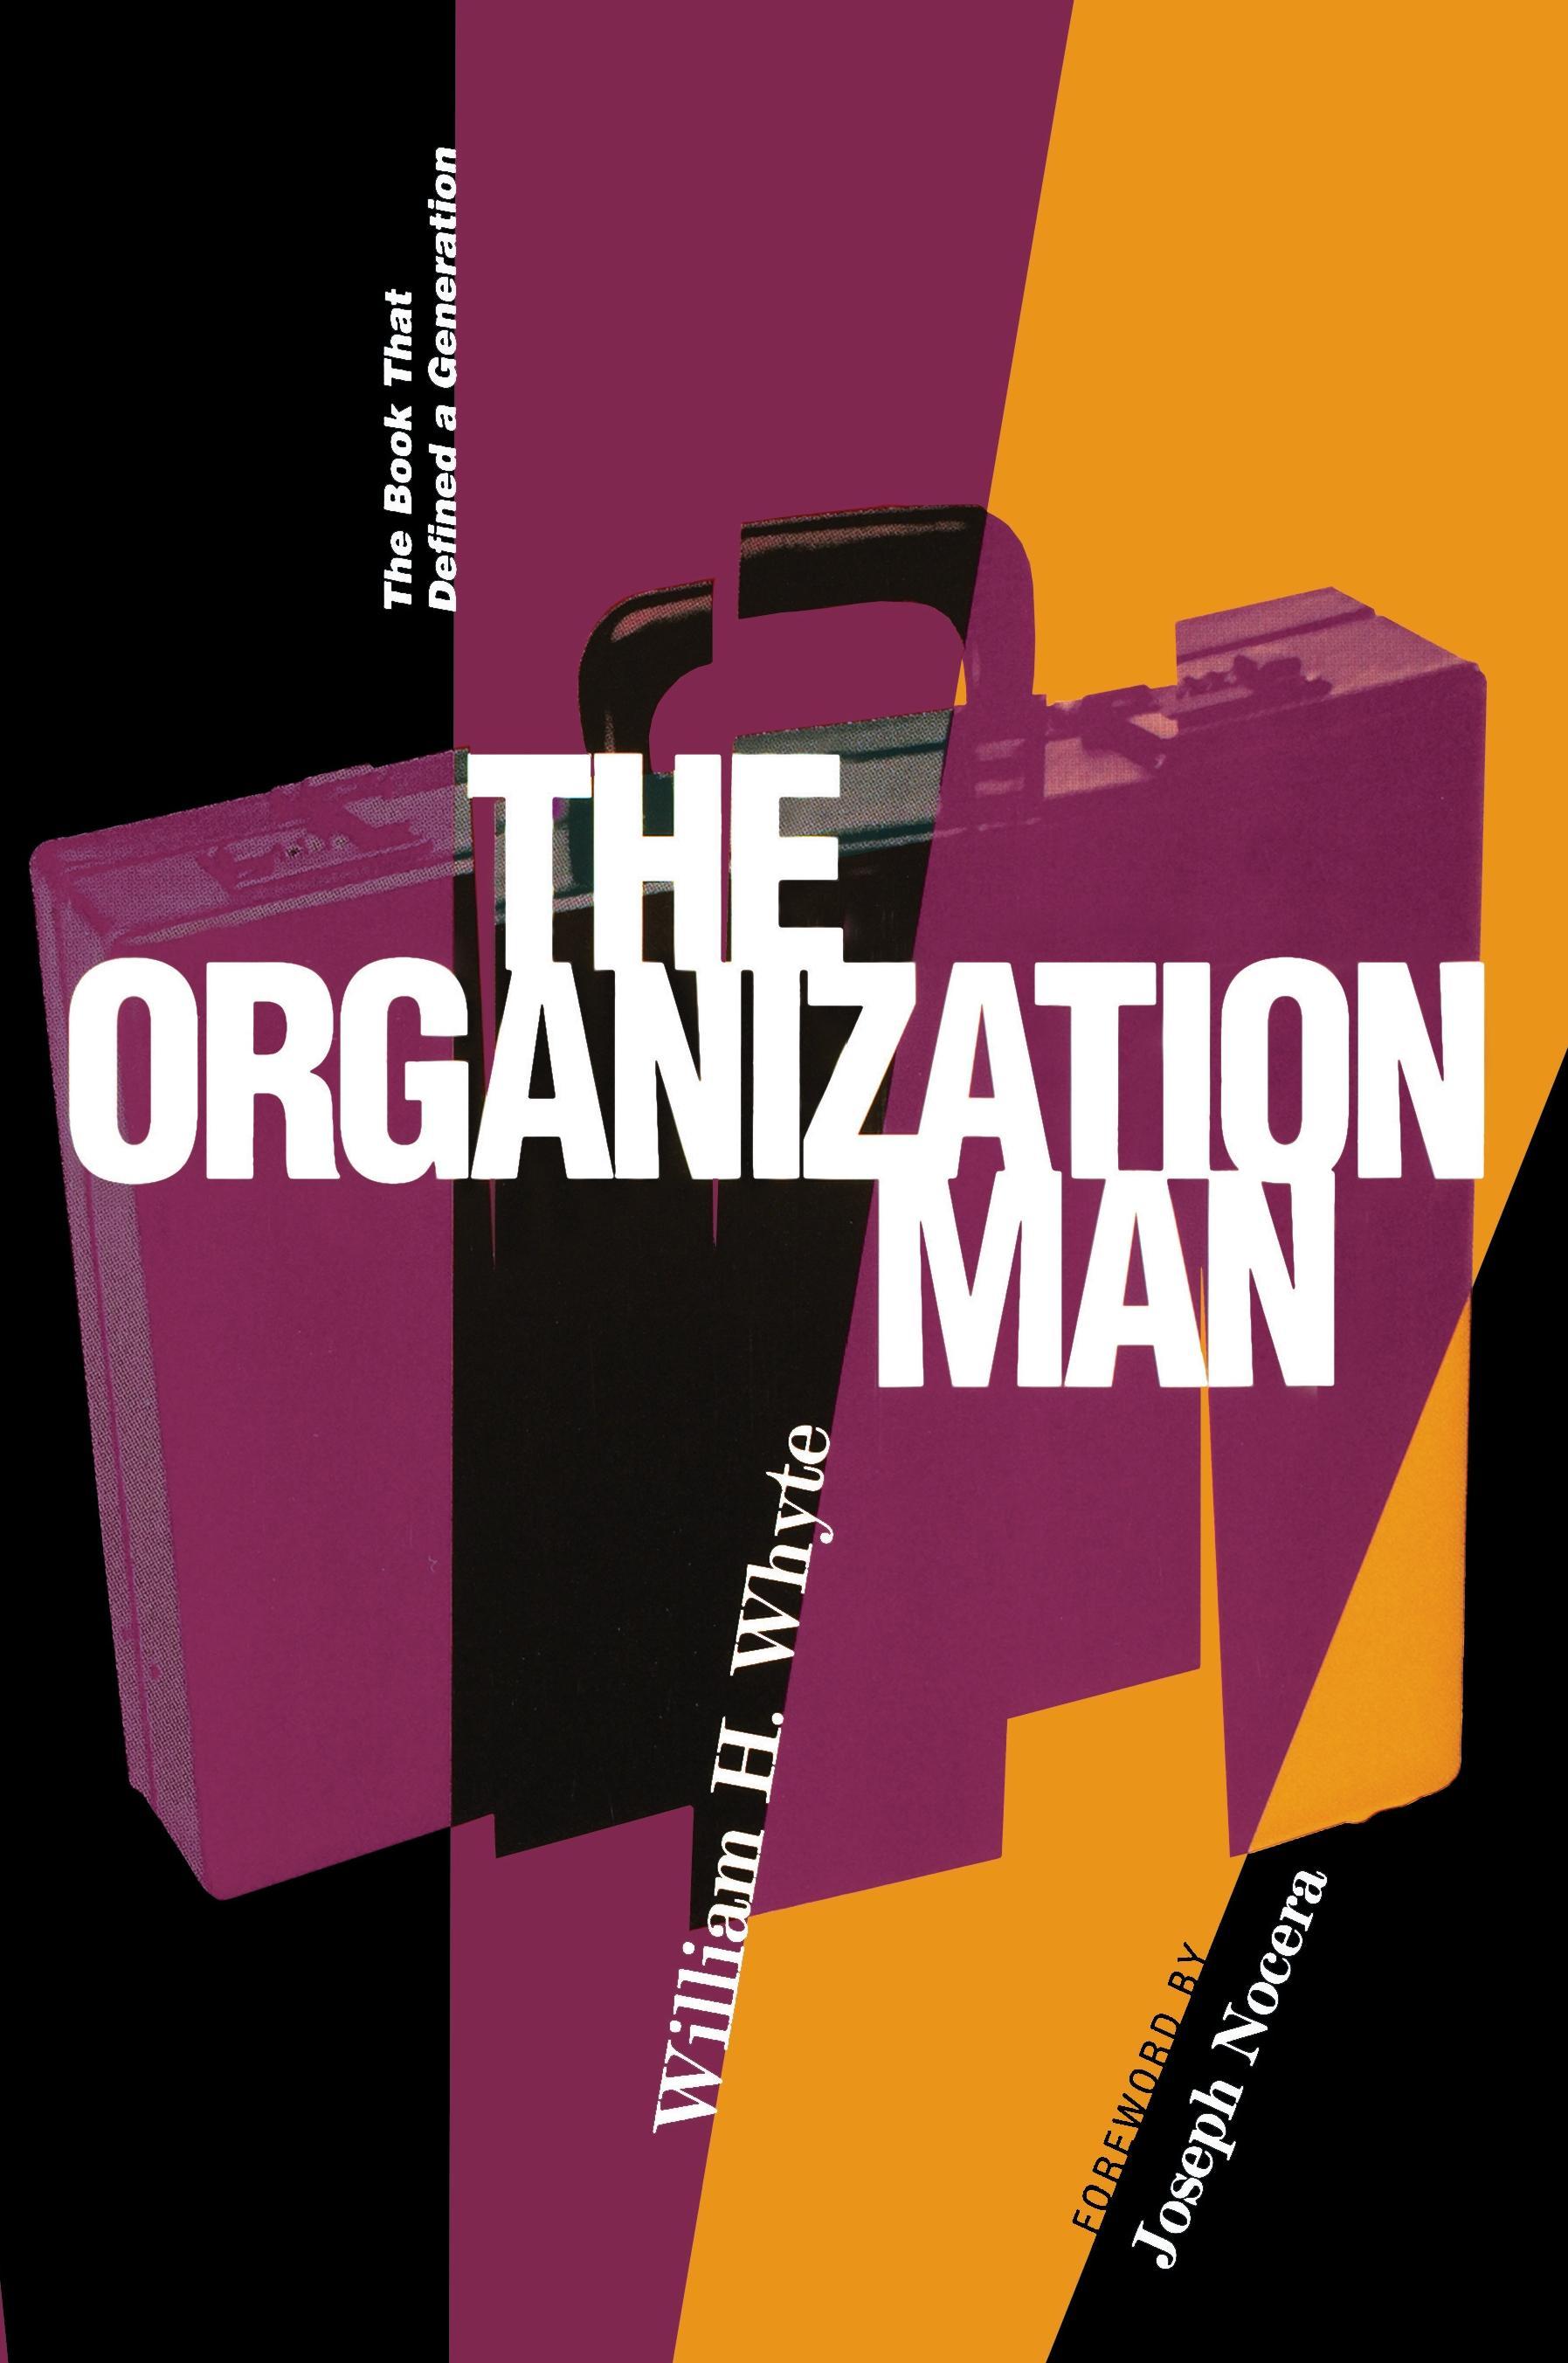 Organization Man / The Book That Defined a Generation / William H Whyte / Taschenbuch / Kartoniert / Broschiert / Englisch / 2002 / University of Pennsylvania Press / EAN 9780812218190 - Whyte, William H